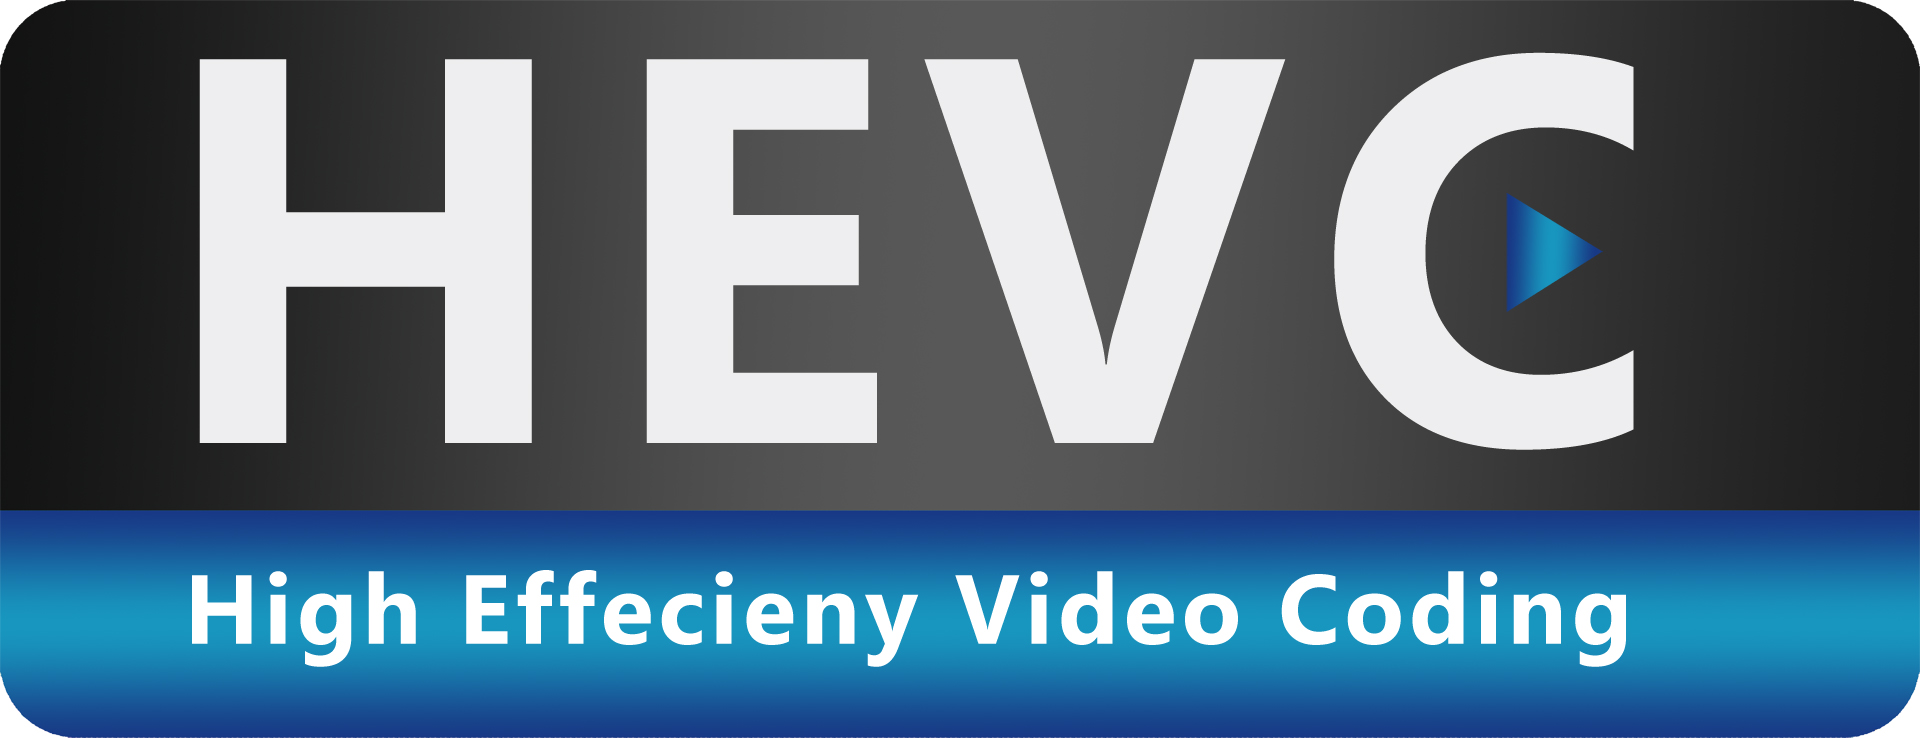 HEVC der neue Videokompressions-Standard